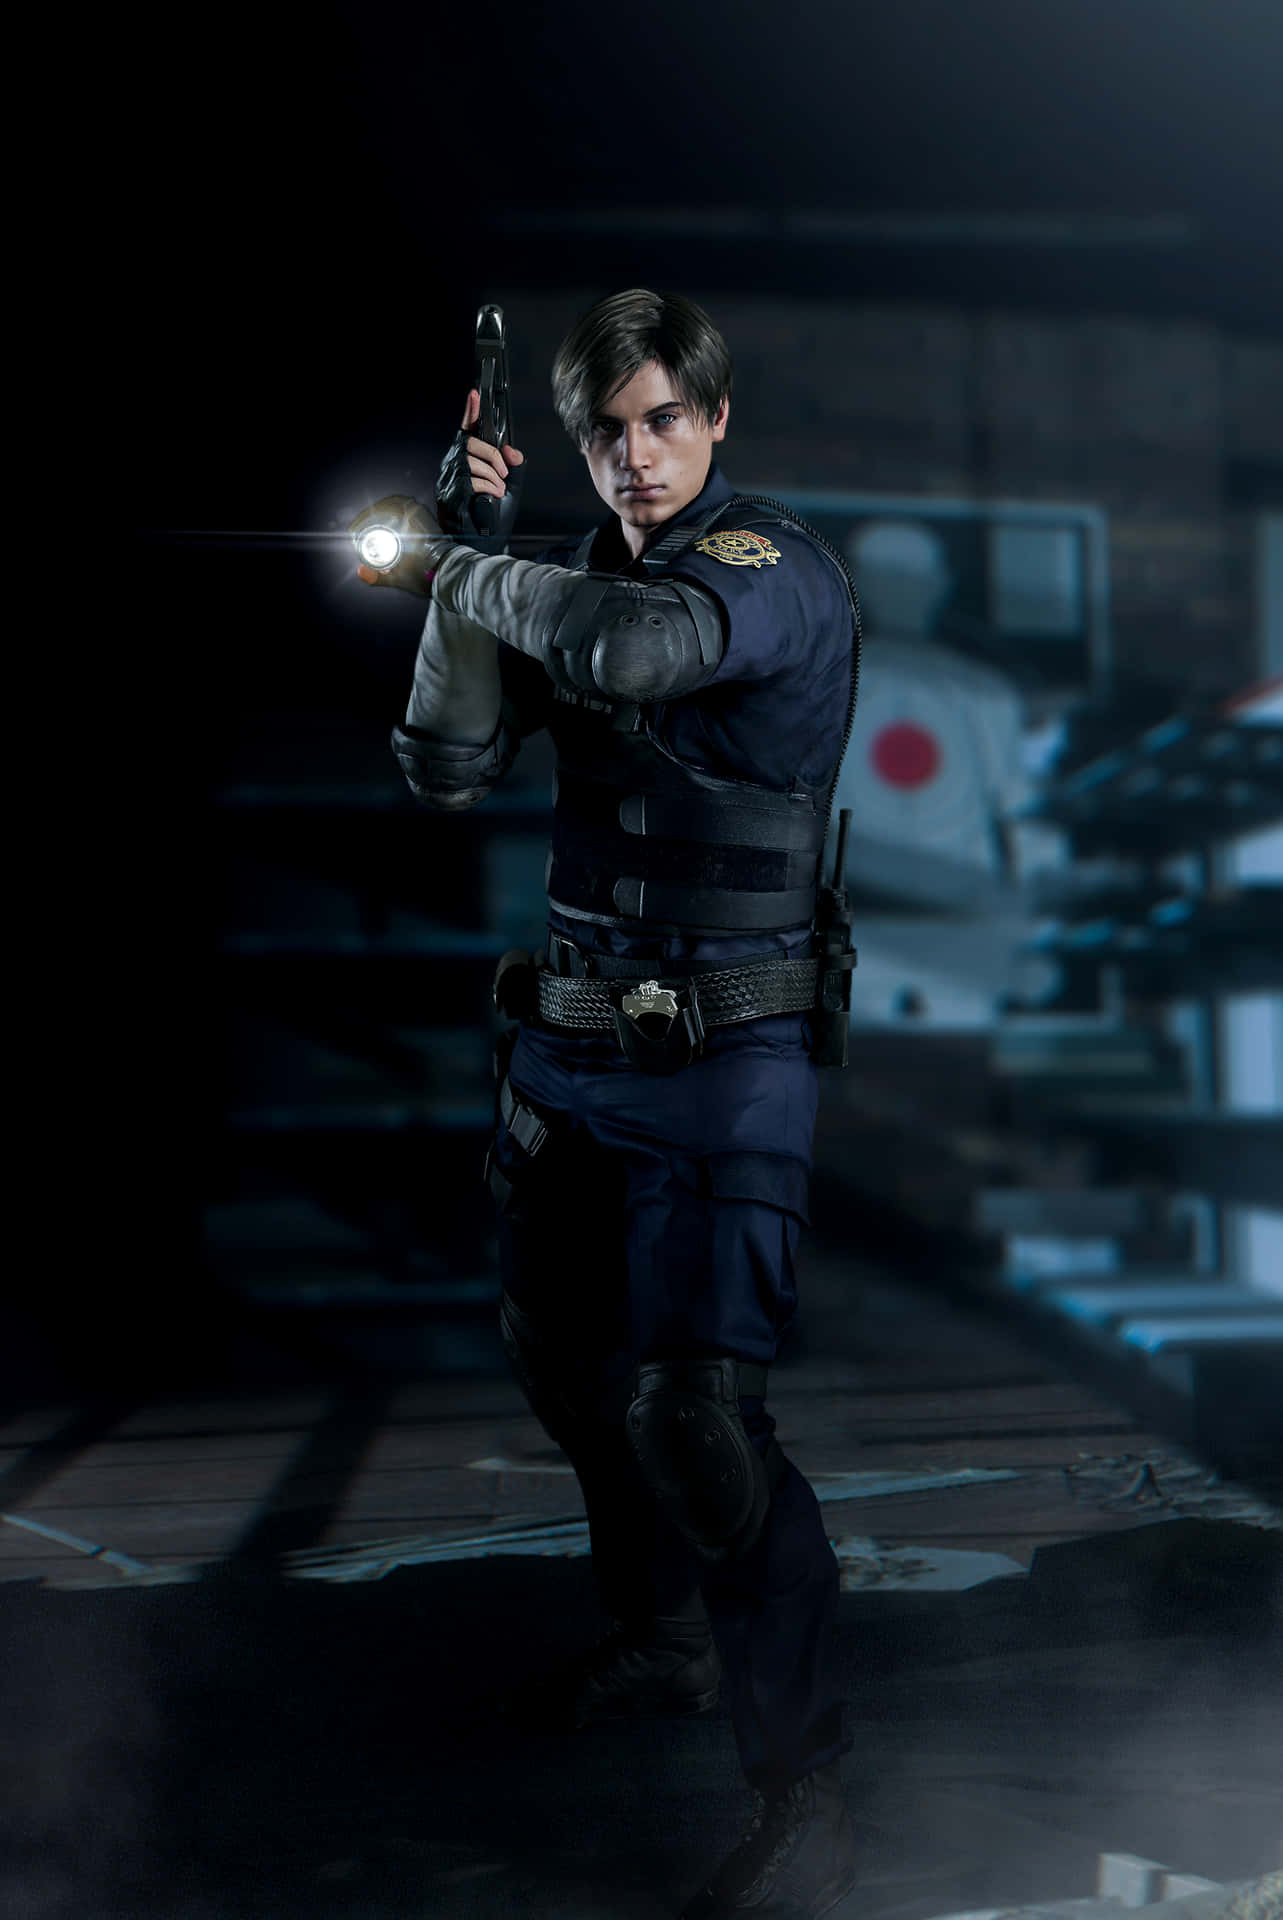 Leon Resident Evil 2 Wallpaper